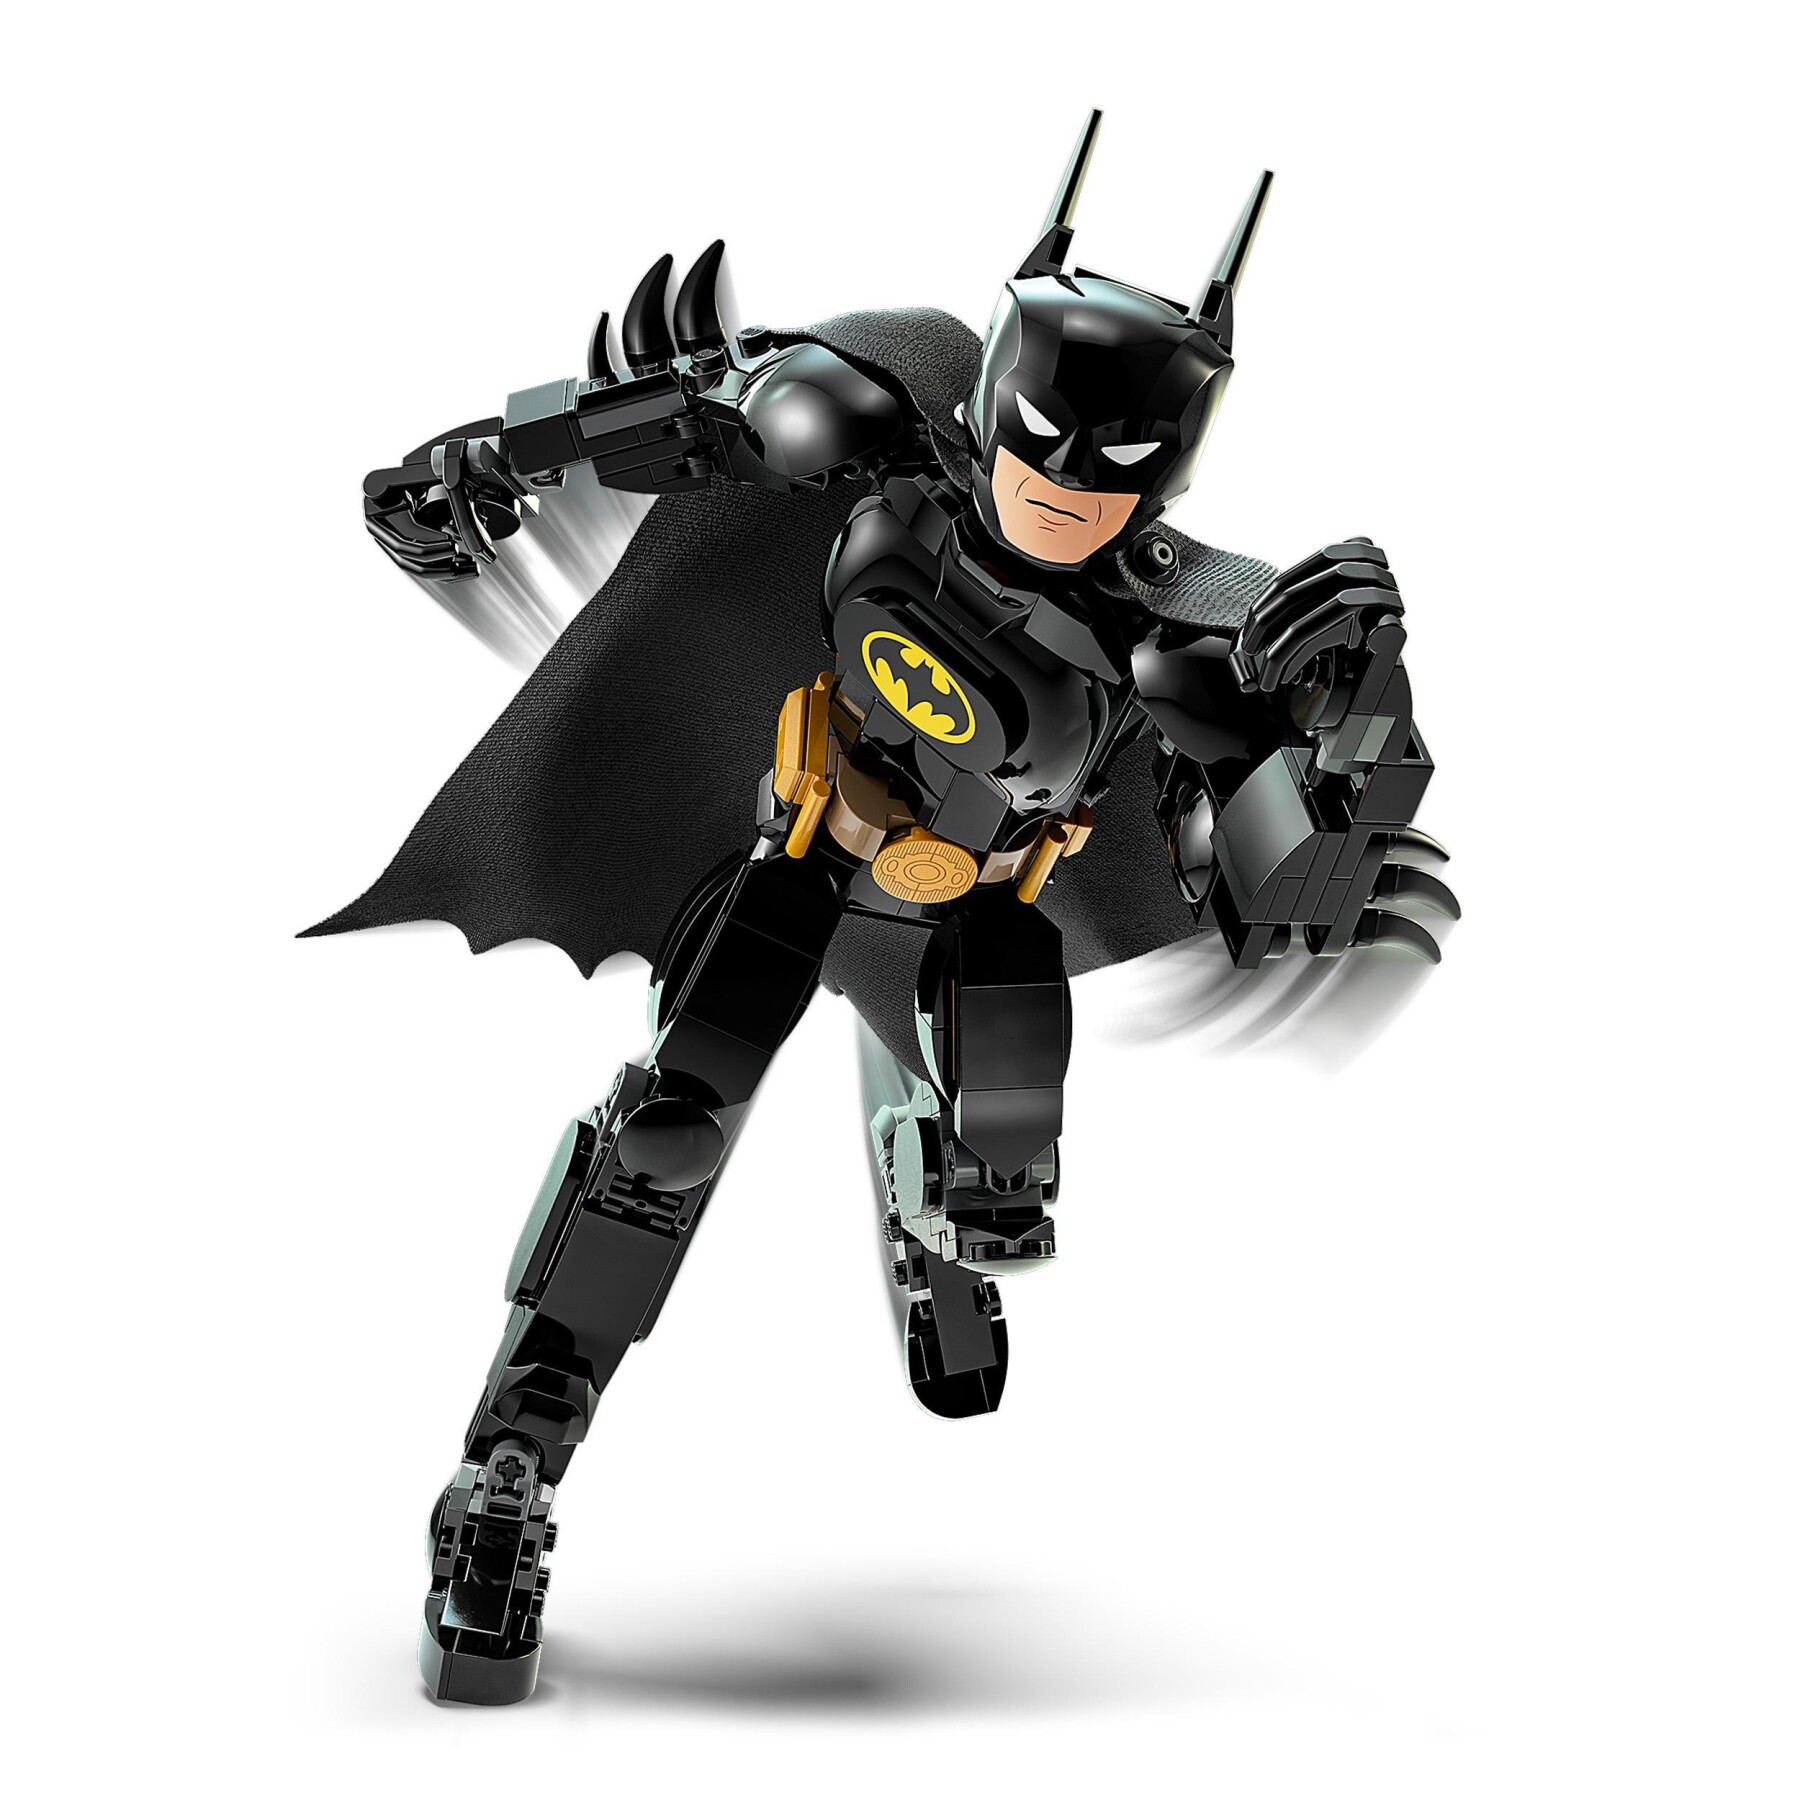 Mantello da Batman™ per bambini